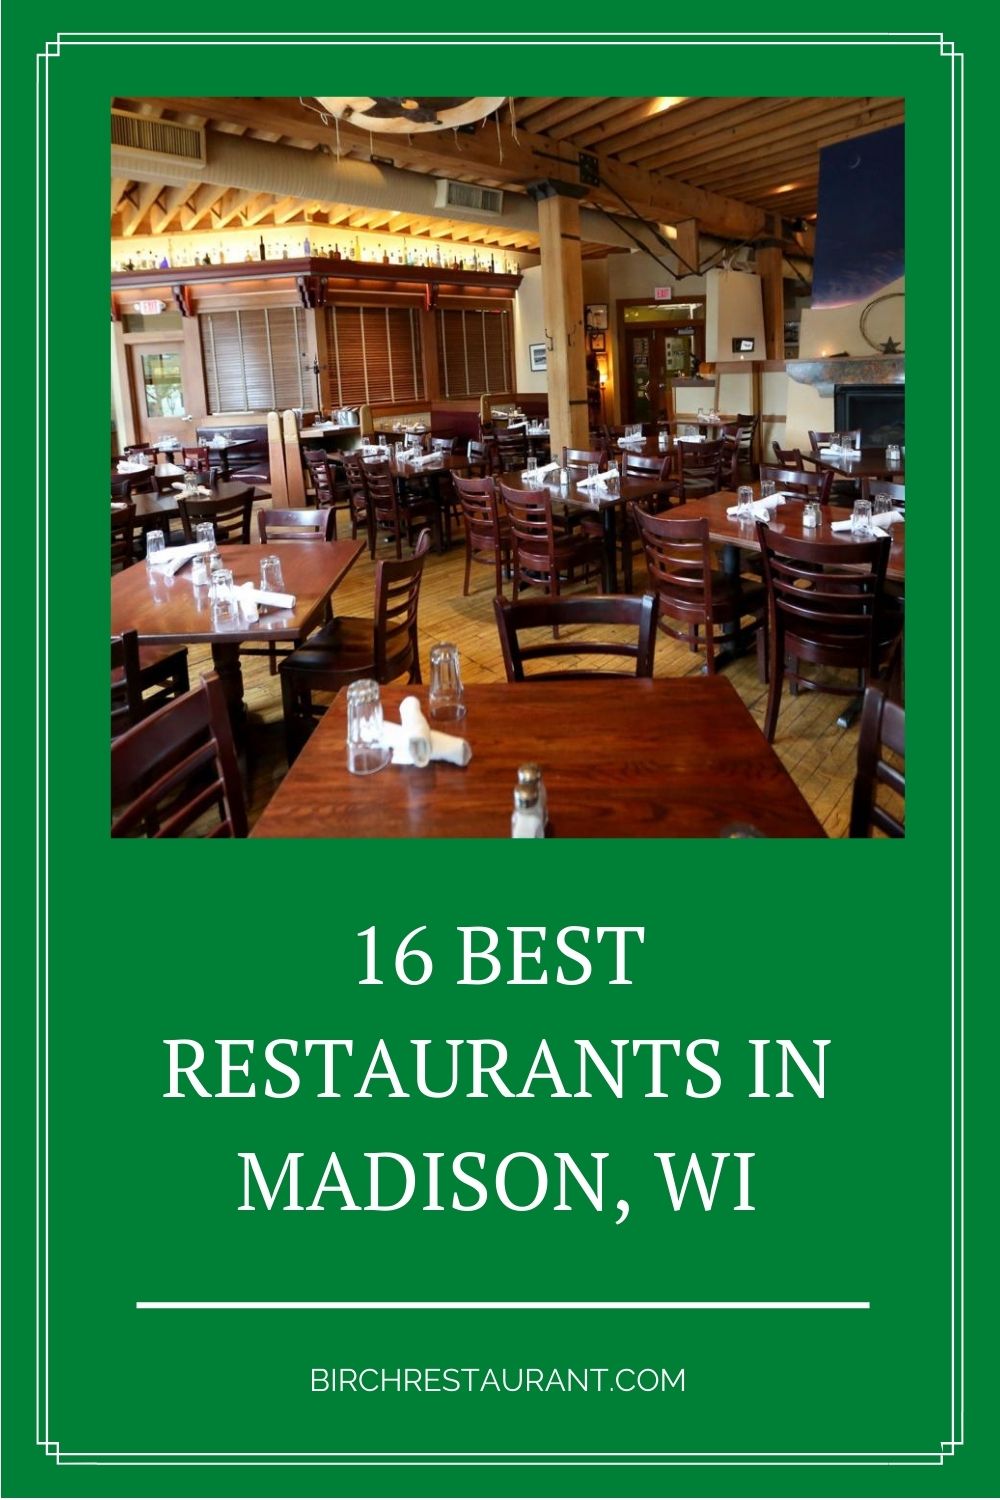 Best Restaurants in Madison